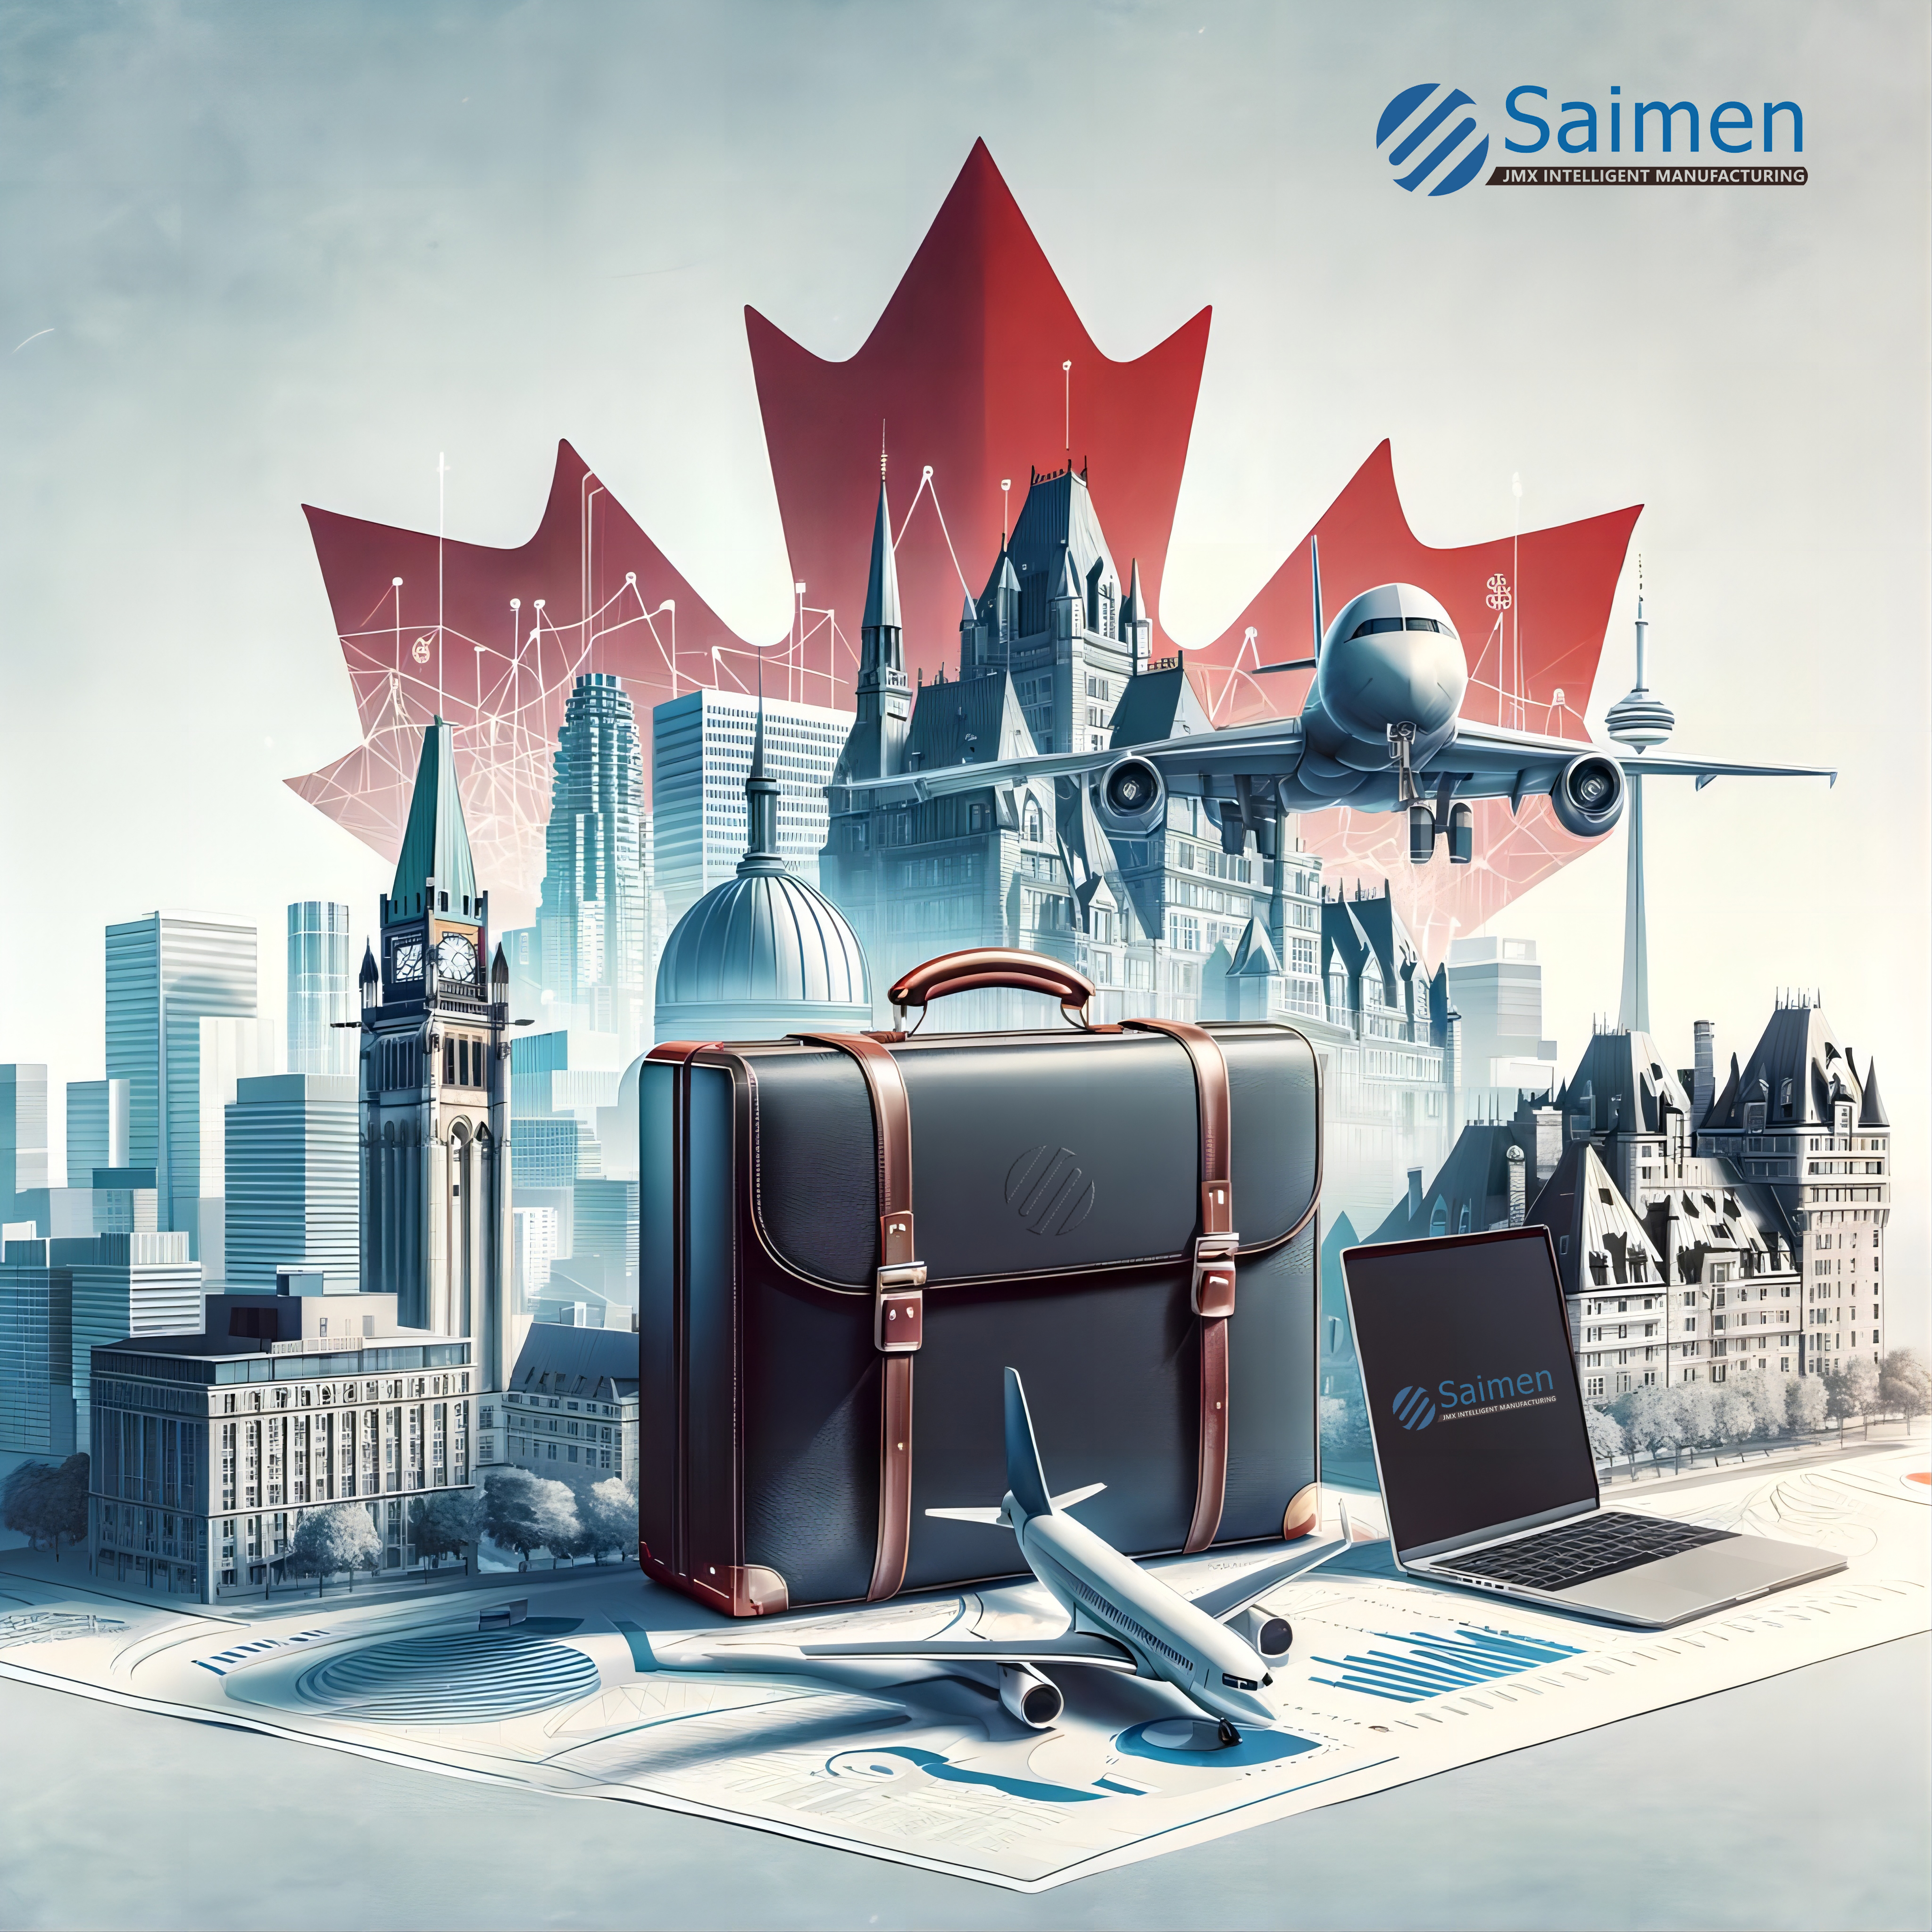 Illustration numérique de l'expansion commerciale mondiale de Saimen, avec des points de repère canadiens emblématiques, un avion et une mallette, symbolisant les voyages et le commerce internationaux.